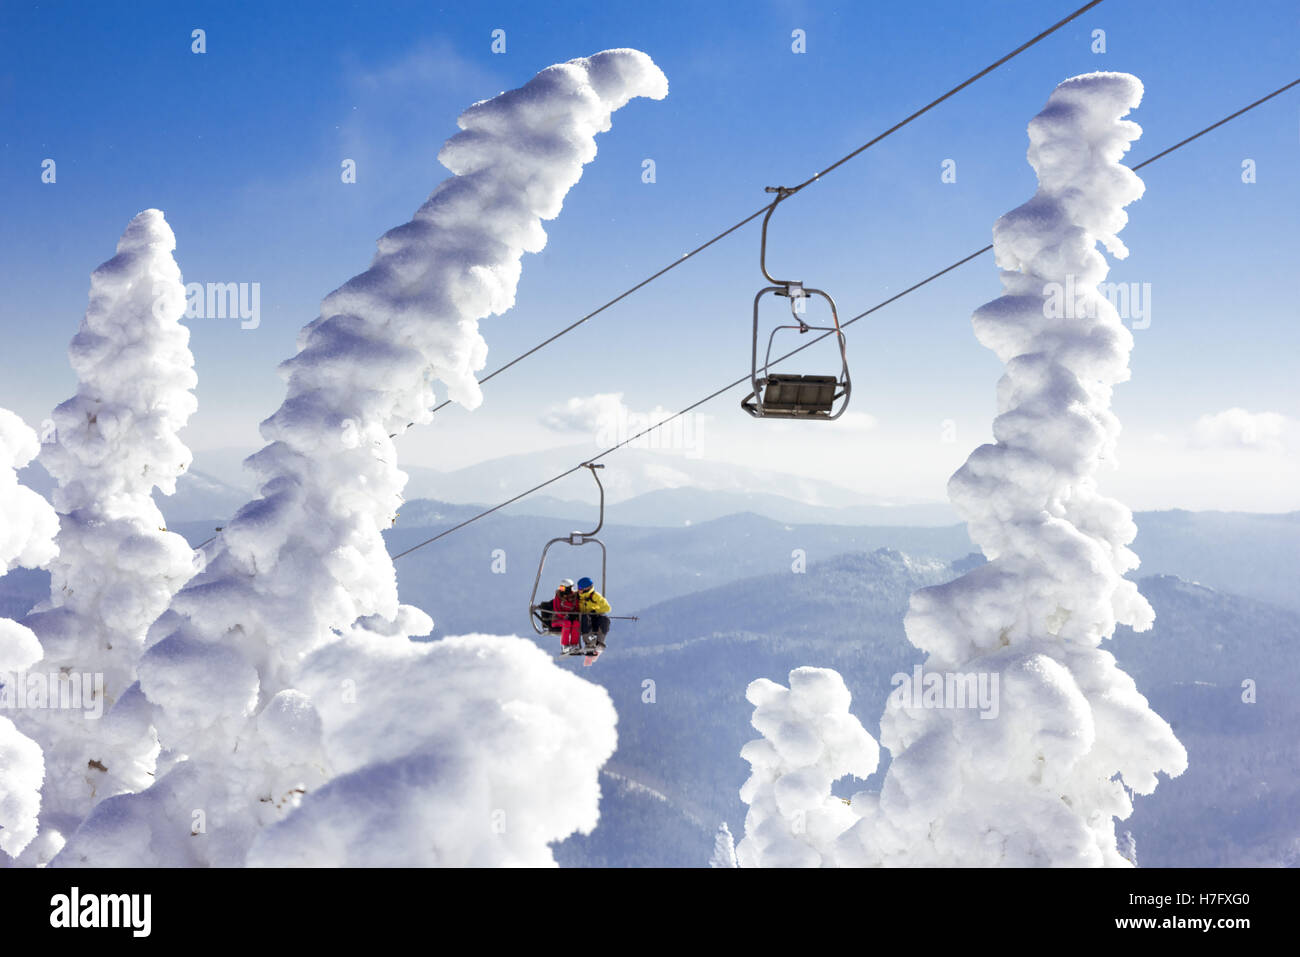 Ski lift at resort winter vacations Stock Photo